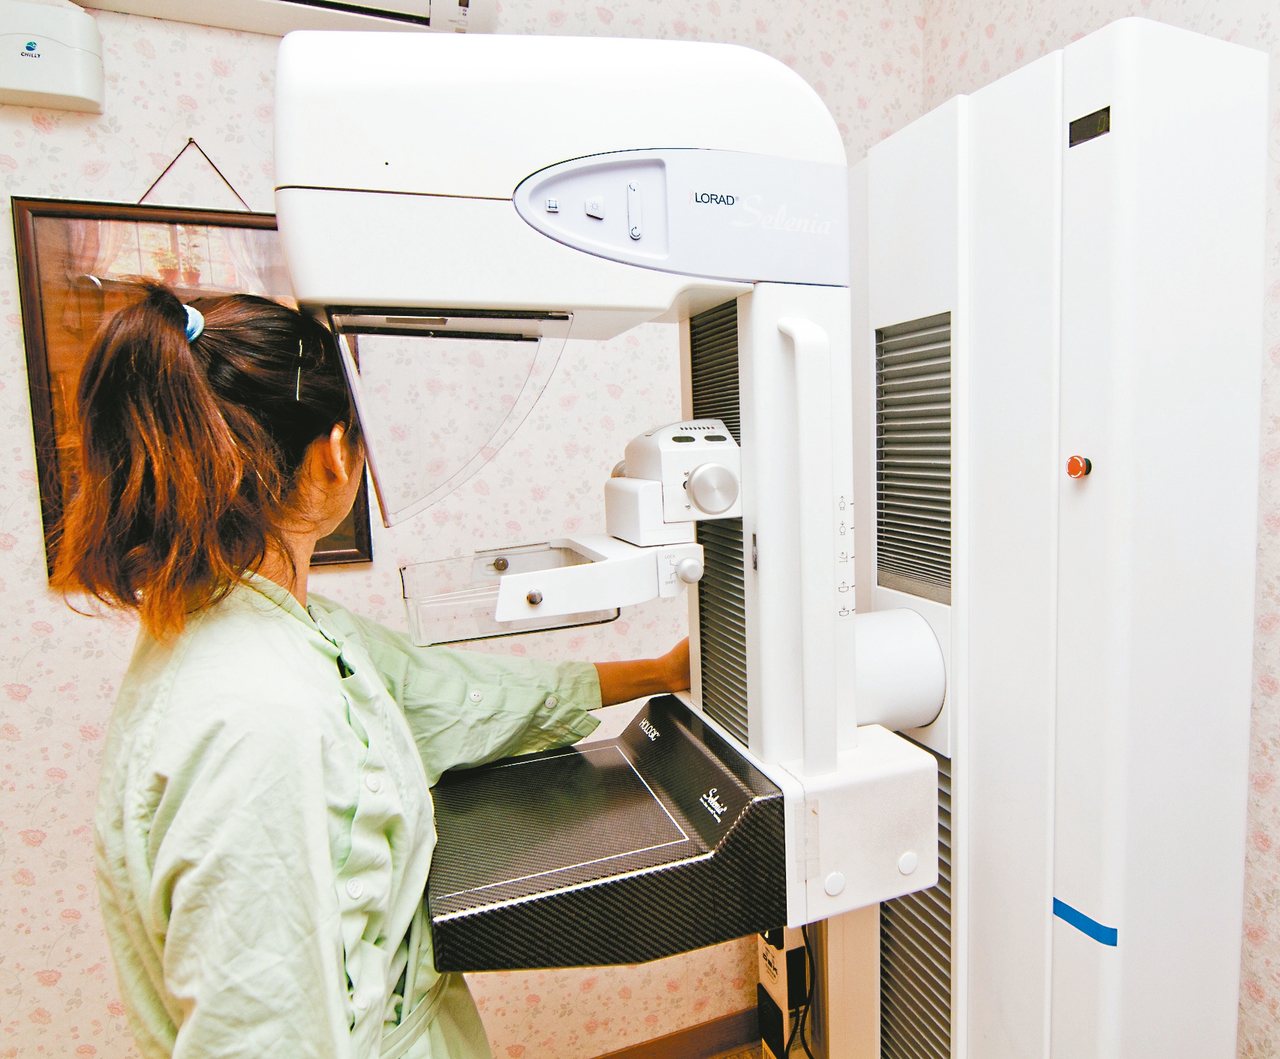 國人乳房X光攝影免費篩檢率首度突破四成，但仍低於日、韓、新加坡等國家。